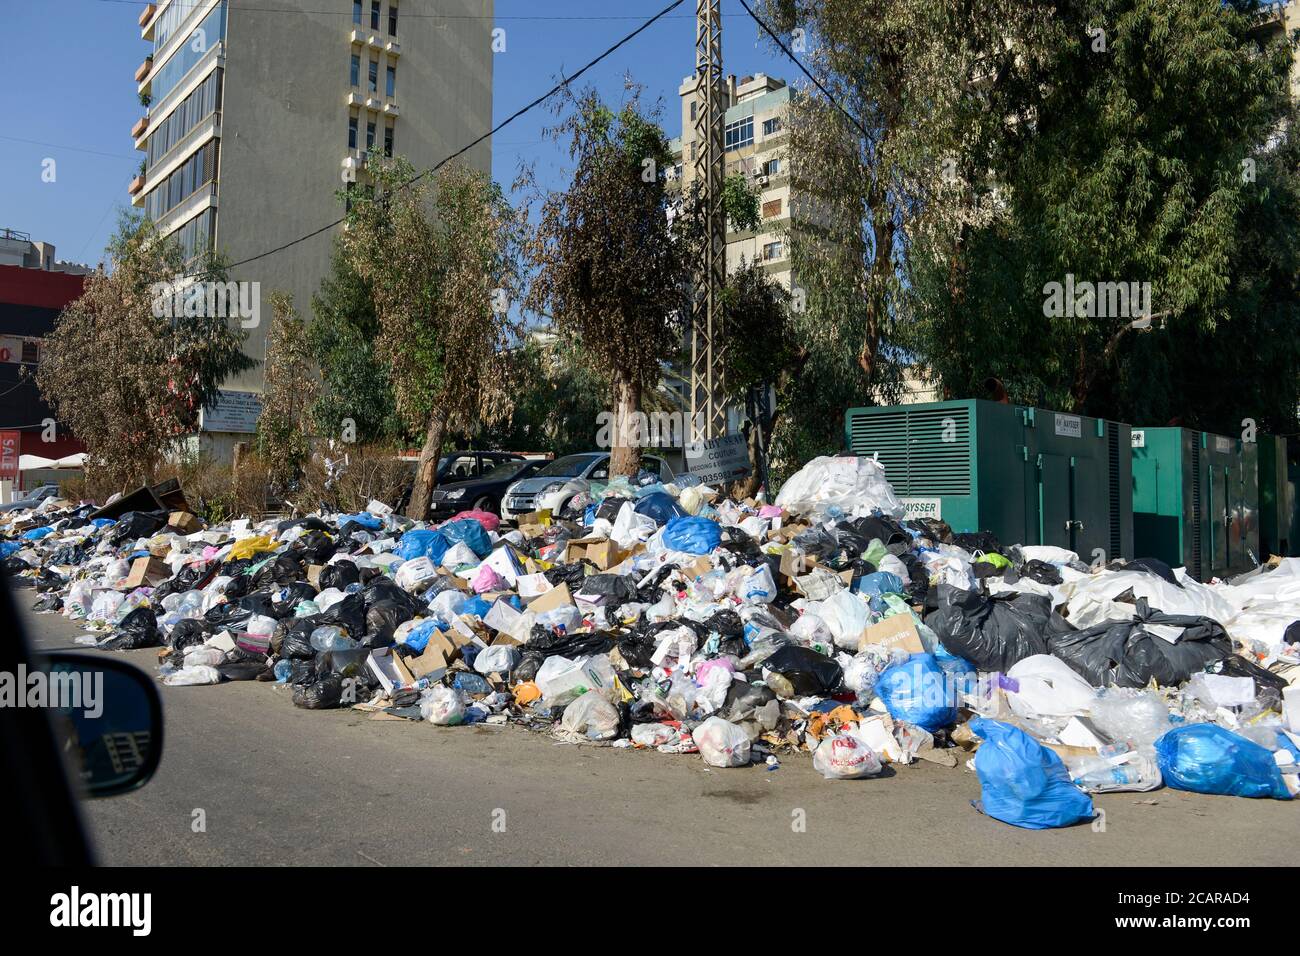 LÍBANO, Beirut, durante 3 semanas no se recogen los residuos / LIBANON, Beirut, seit 3 Monaten wird der Müll nicht abgeholt Foto de stock